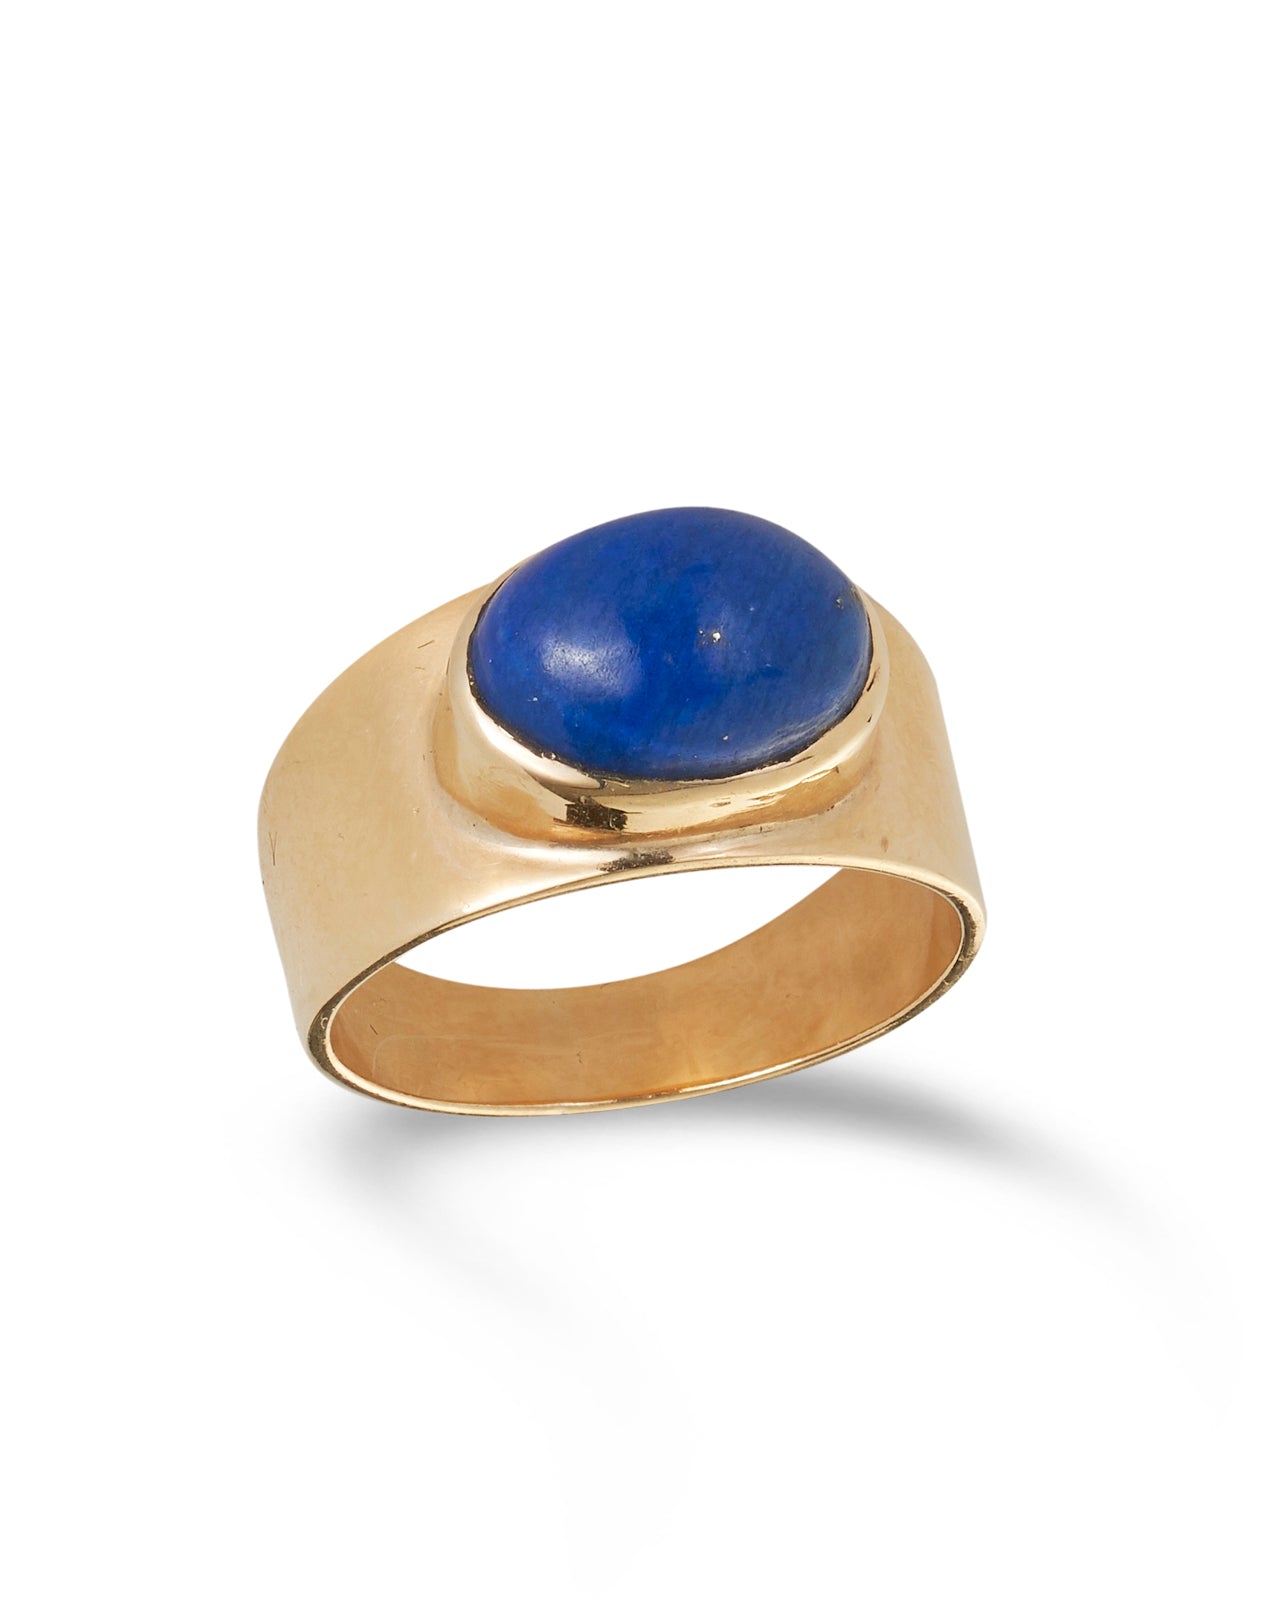 Vintage Lapis Lazuli Ring